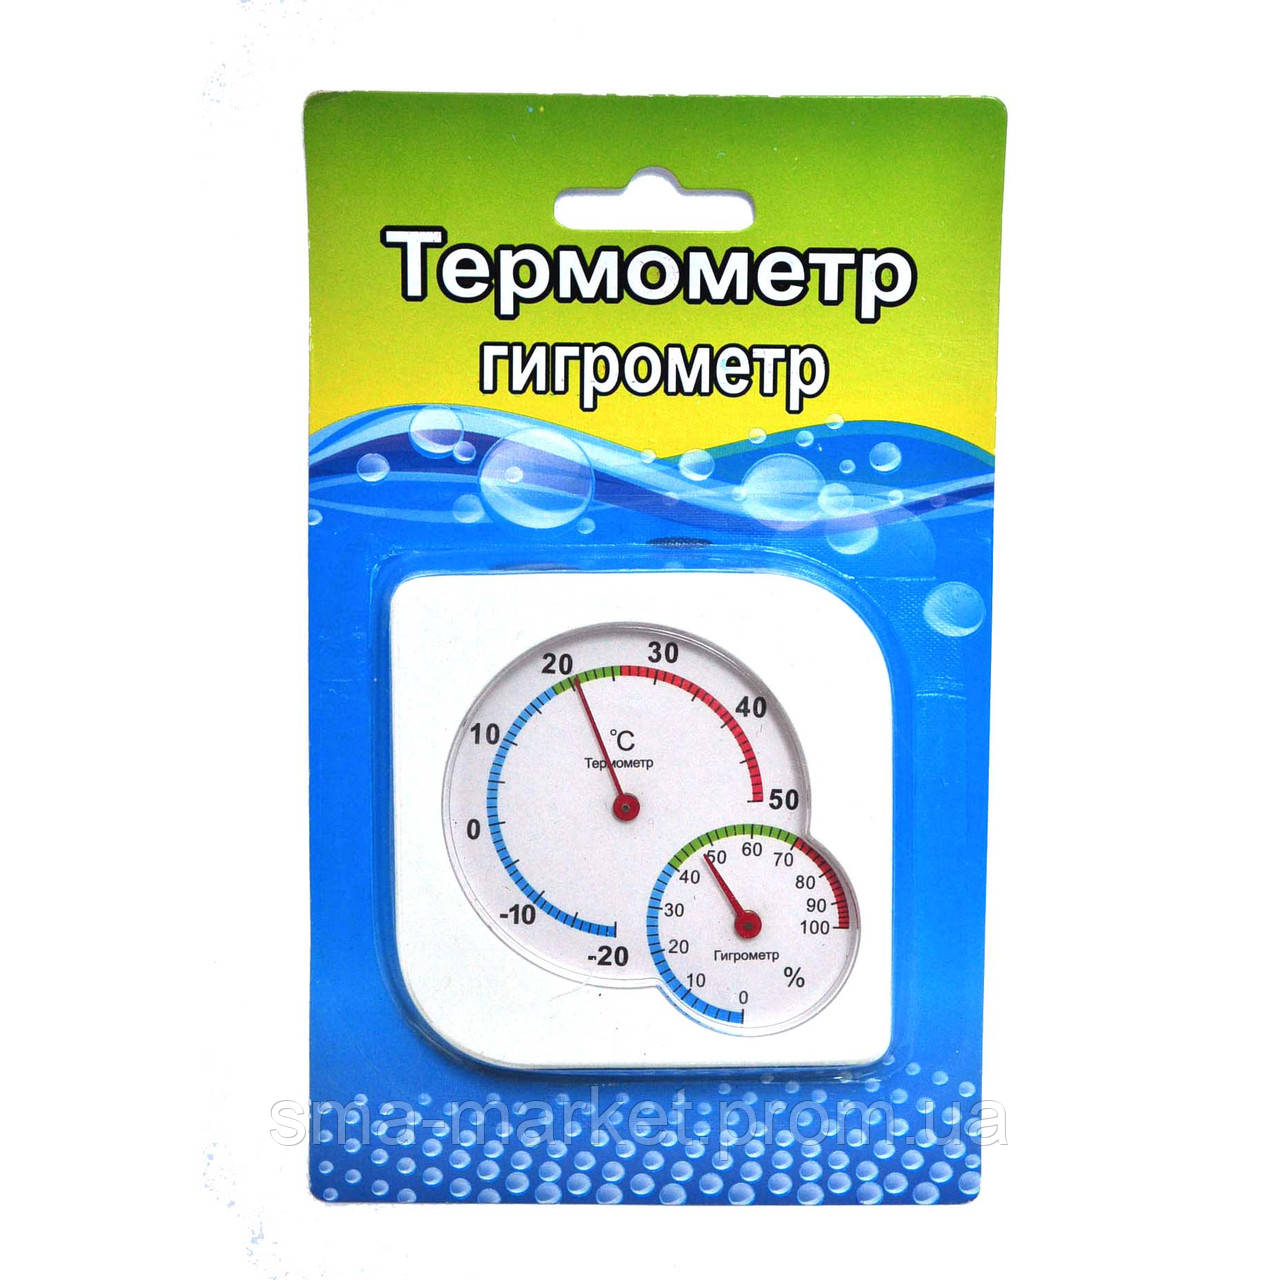 термометр гигрометр купить на валберис